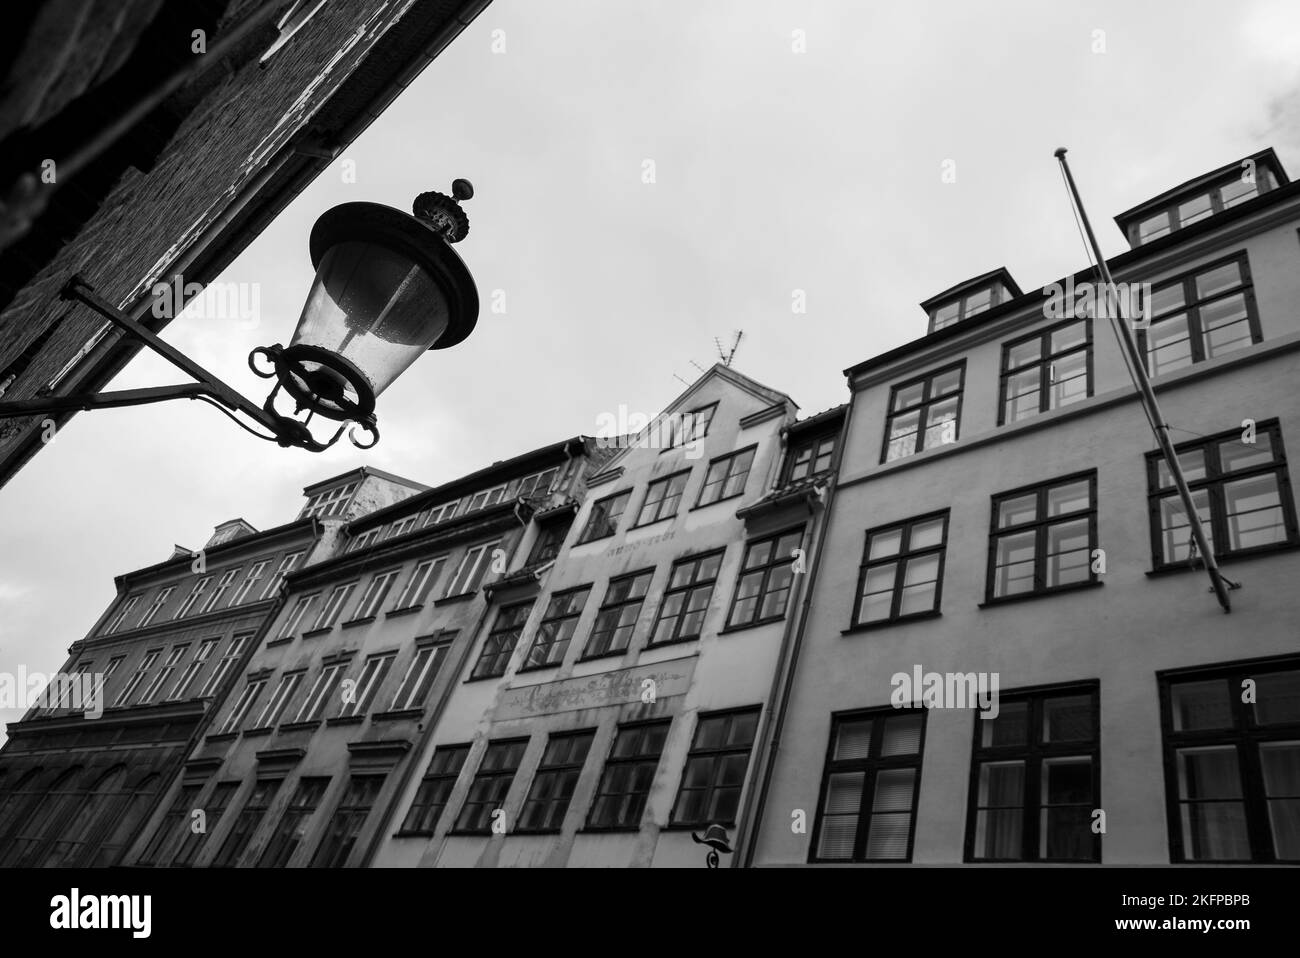 Vecchia lanterna da muro vintage su una casa, in una vecchia strada a Copenhagen, Danimarca. Architettura tradizionale. Vecchia strada lampada. Foto Stock